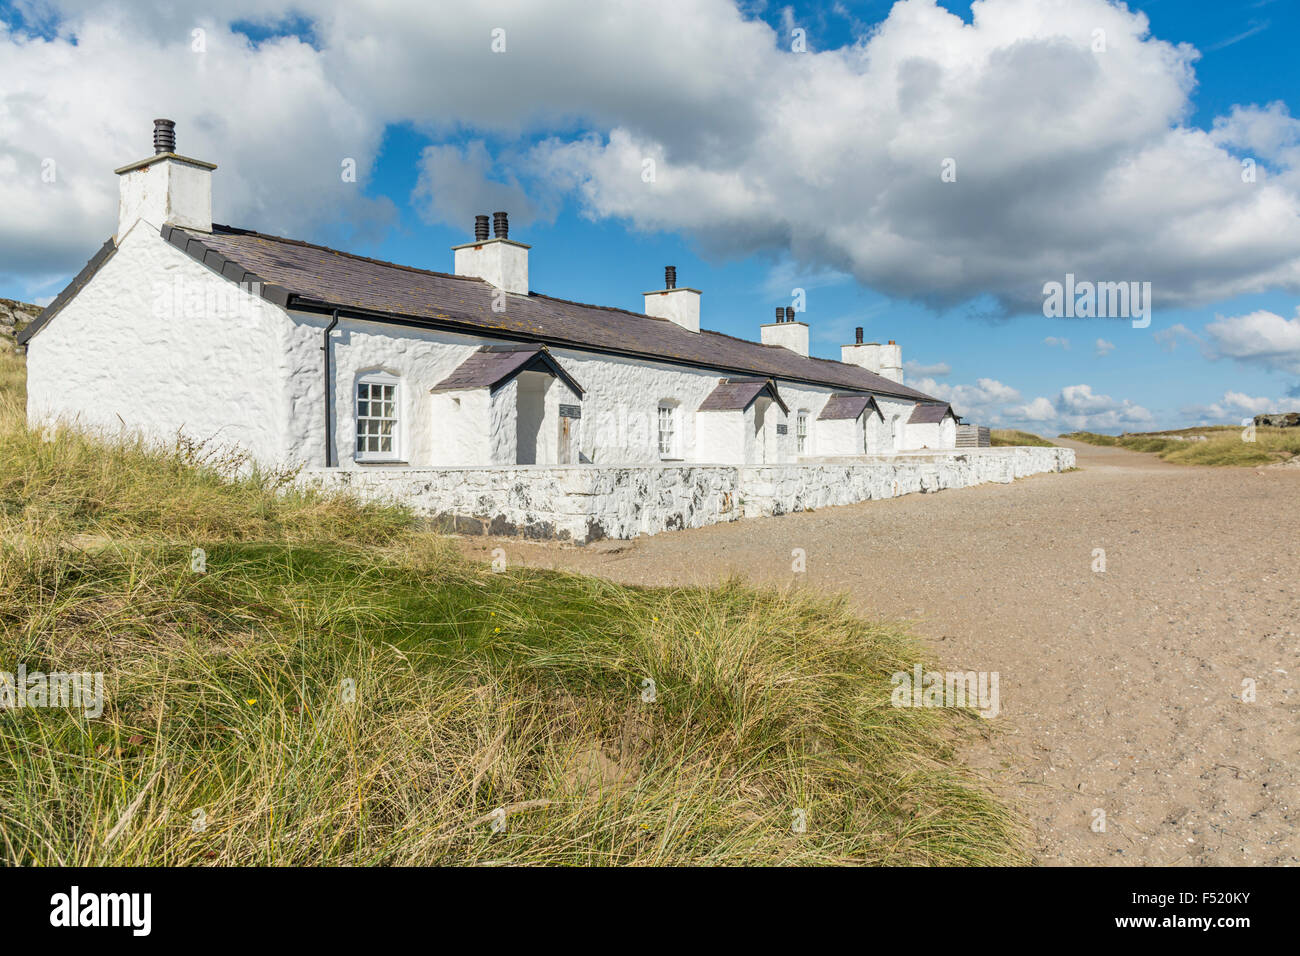 Les cottages du pilote de l'île Llanddwyn, Anglesey, au nord du Pays de Galles, Royaume-Uni. Prise le 13 octobre 2015. Banque D'Images